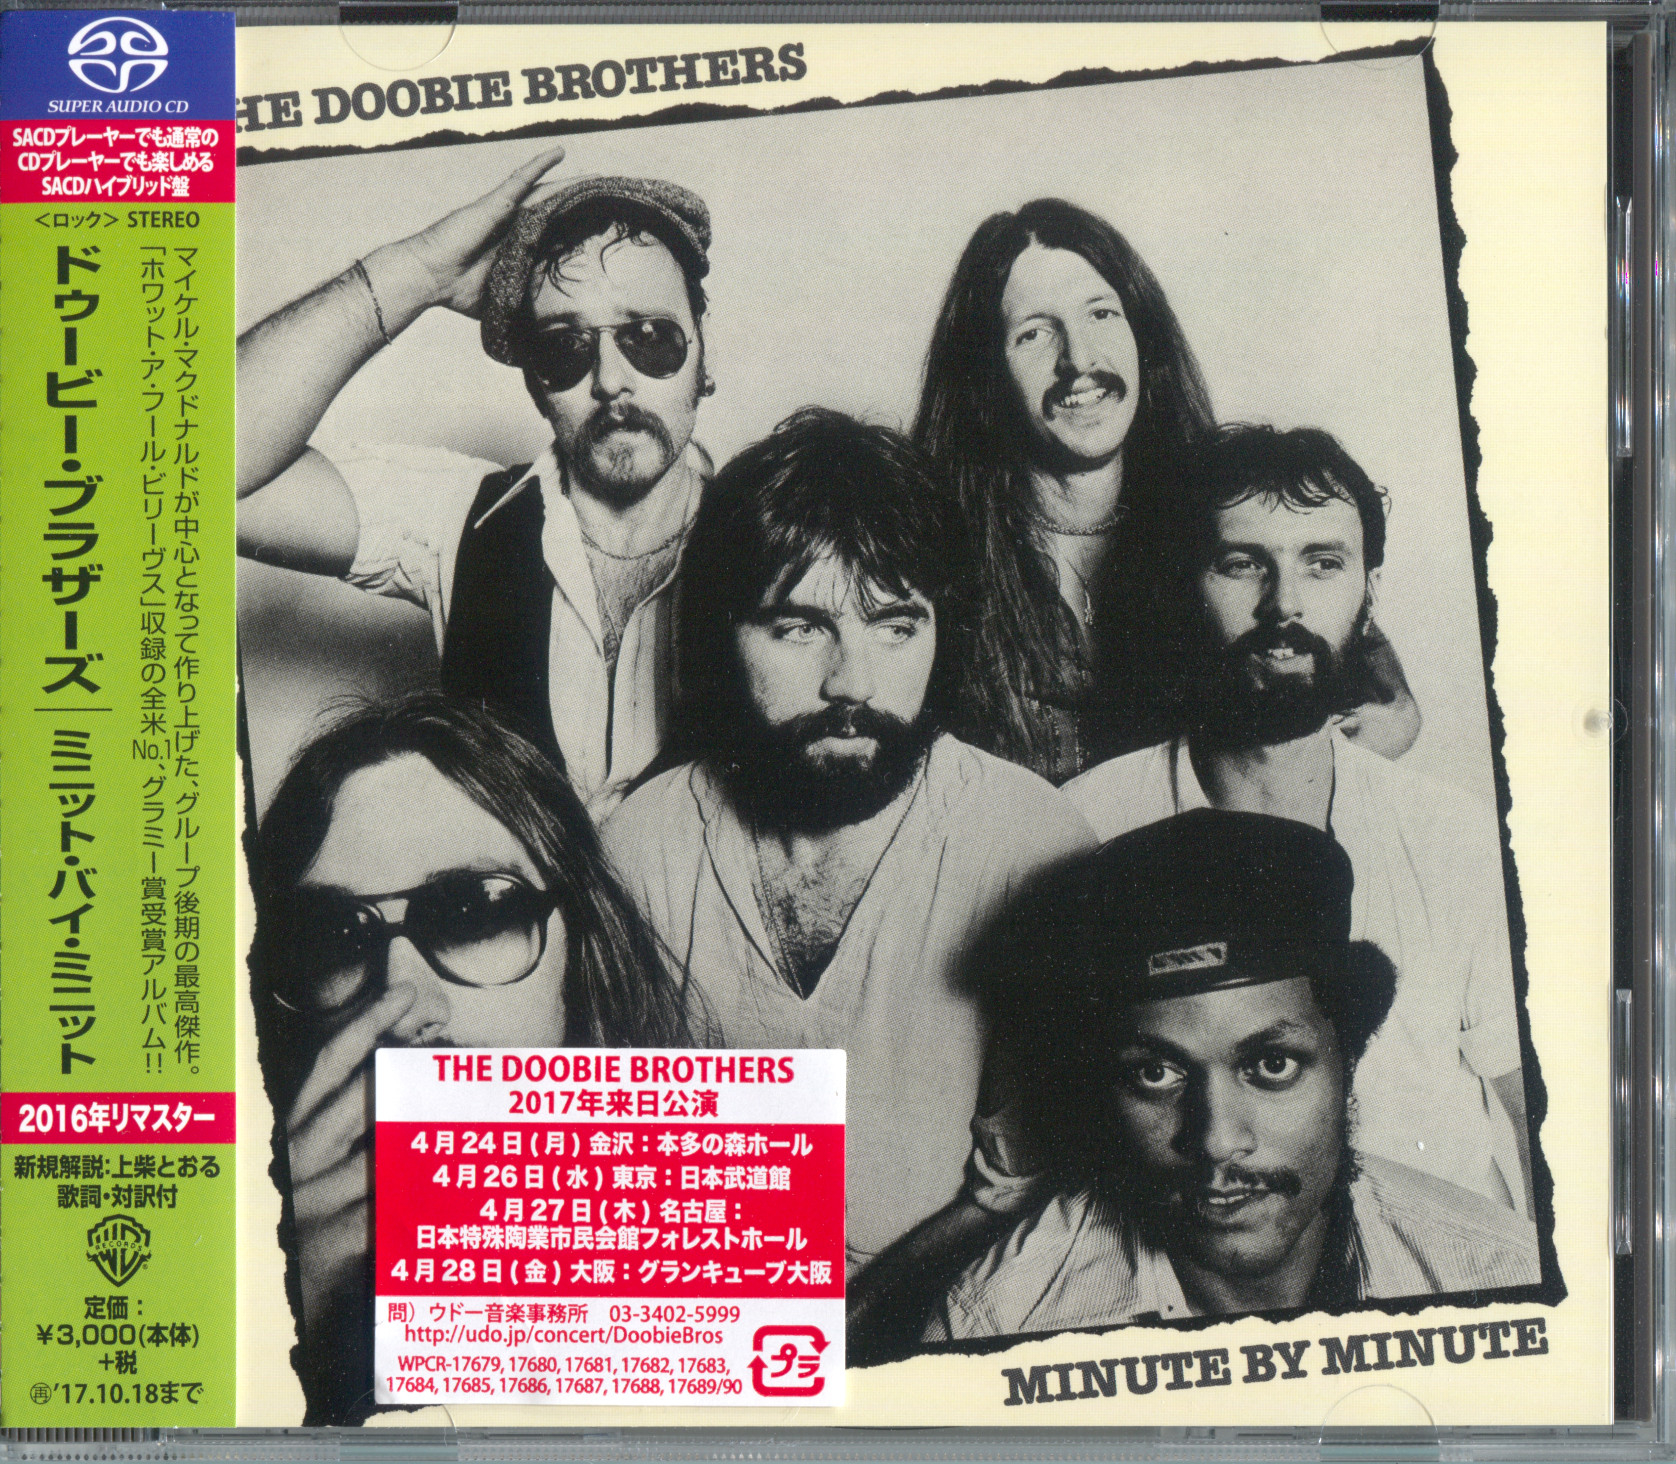 Brothers дискография. The Doobie brothers. The Doobie brothers minute by minute 1978. Группа Doobie brothers фото. Son Doobie - Doobie Deluxe.